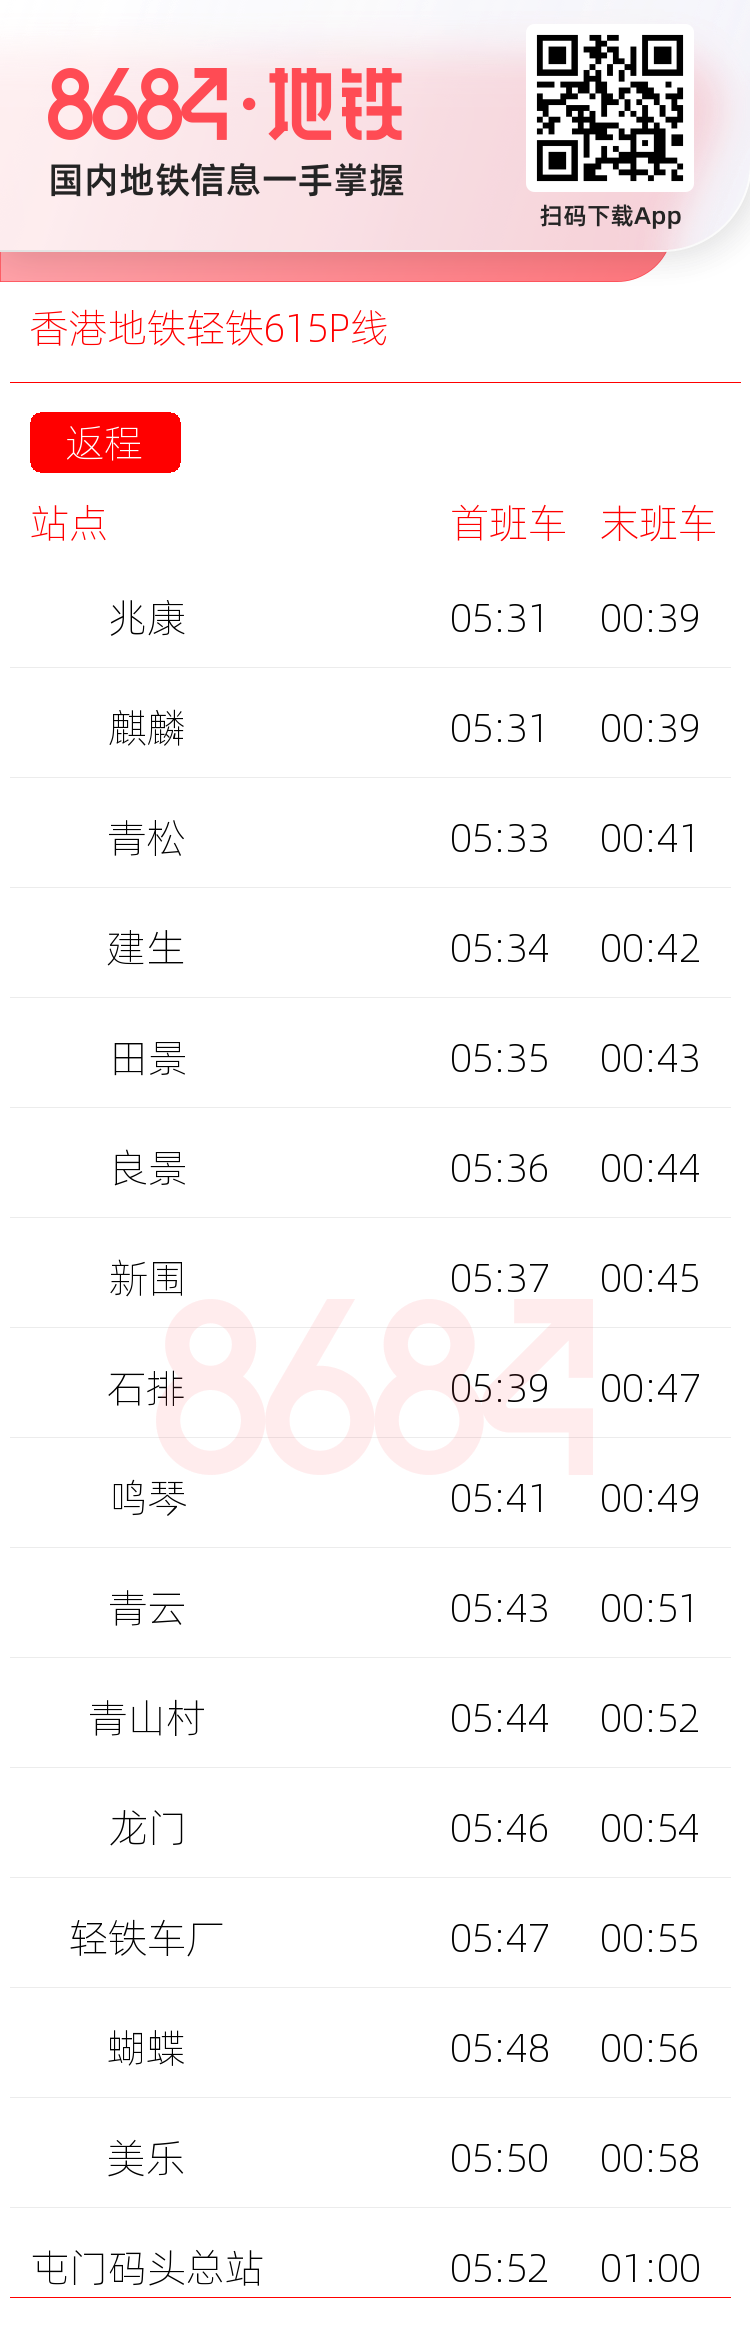 香港地铁轻铁615P线运营时间表